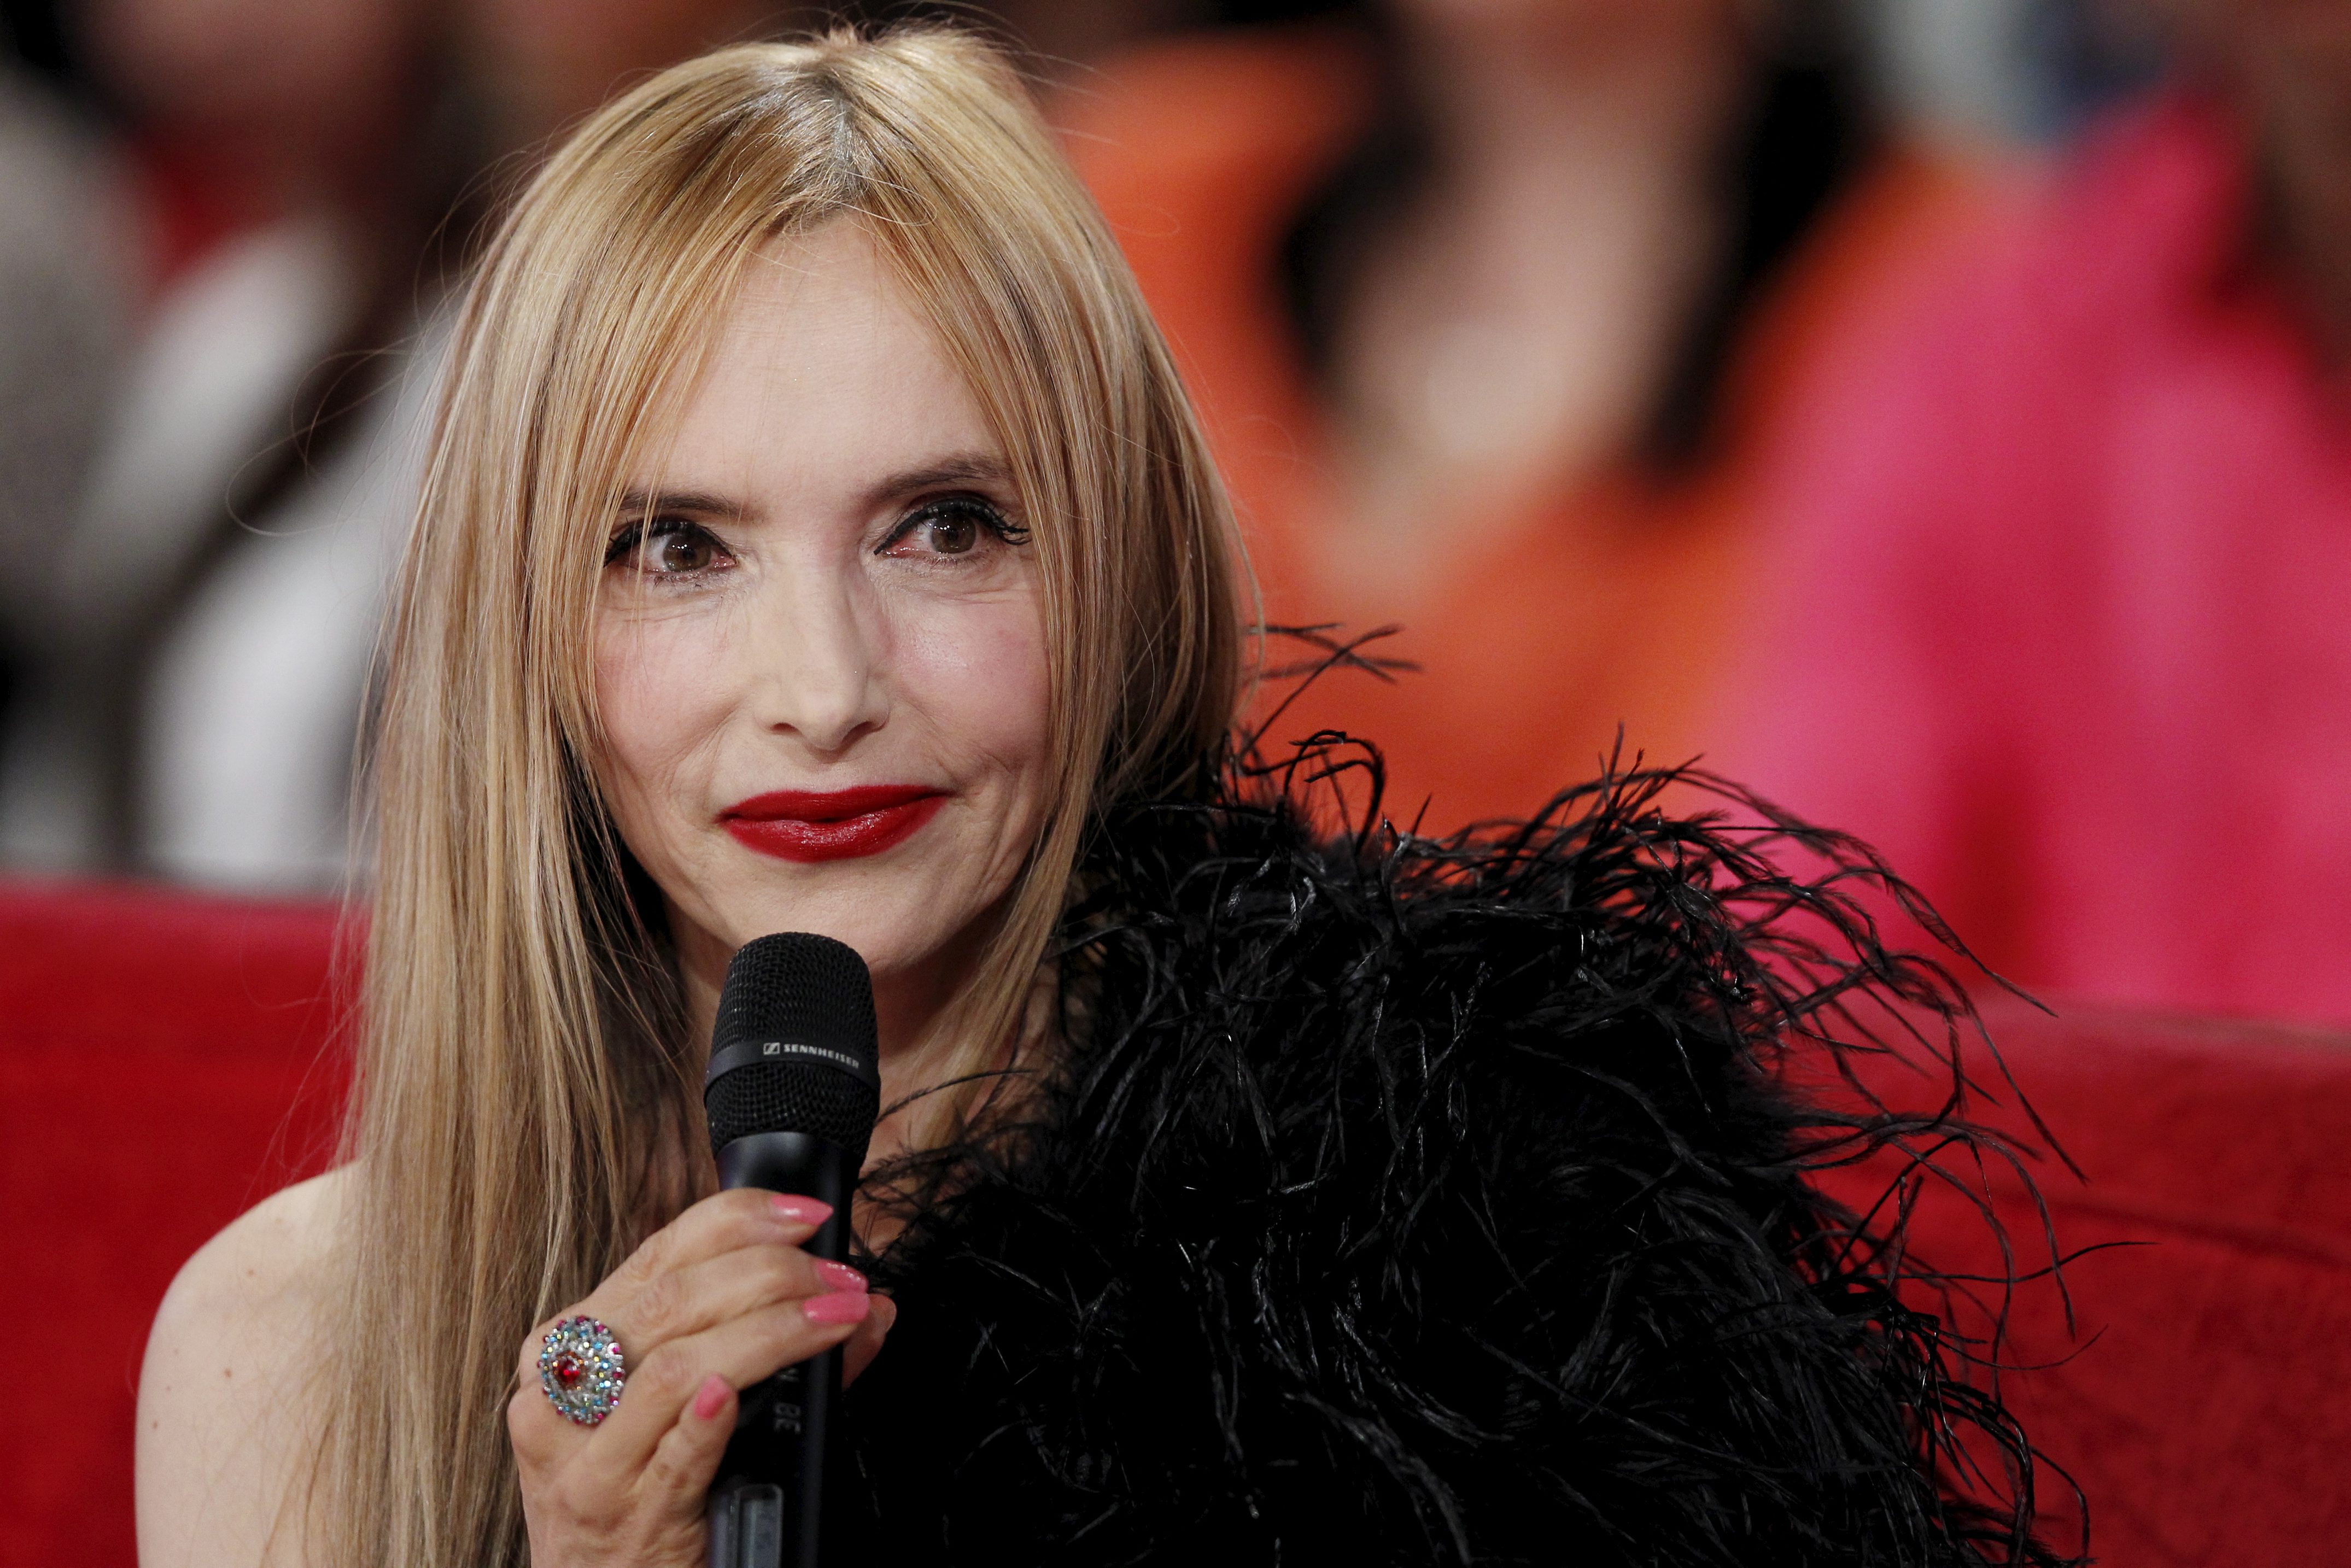 Jeanne Mas critique Madonna sur le prix exorbitant de ses places de concert